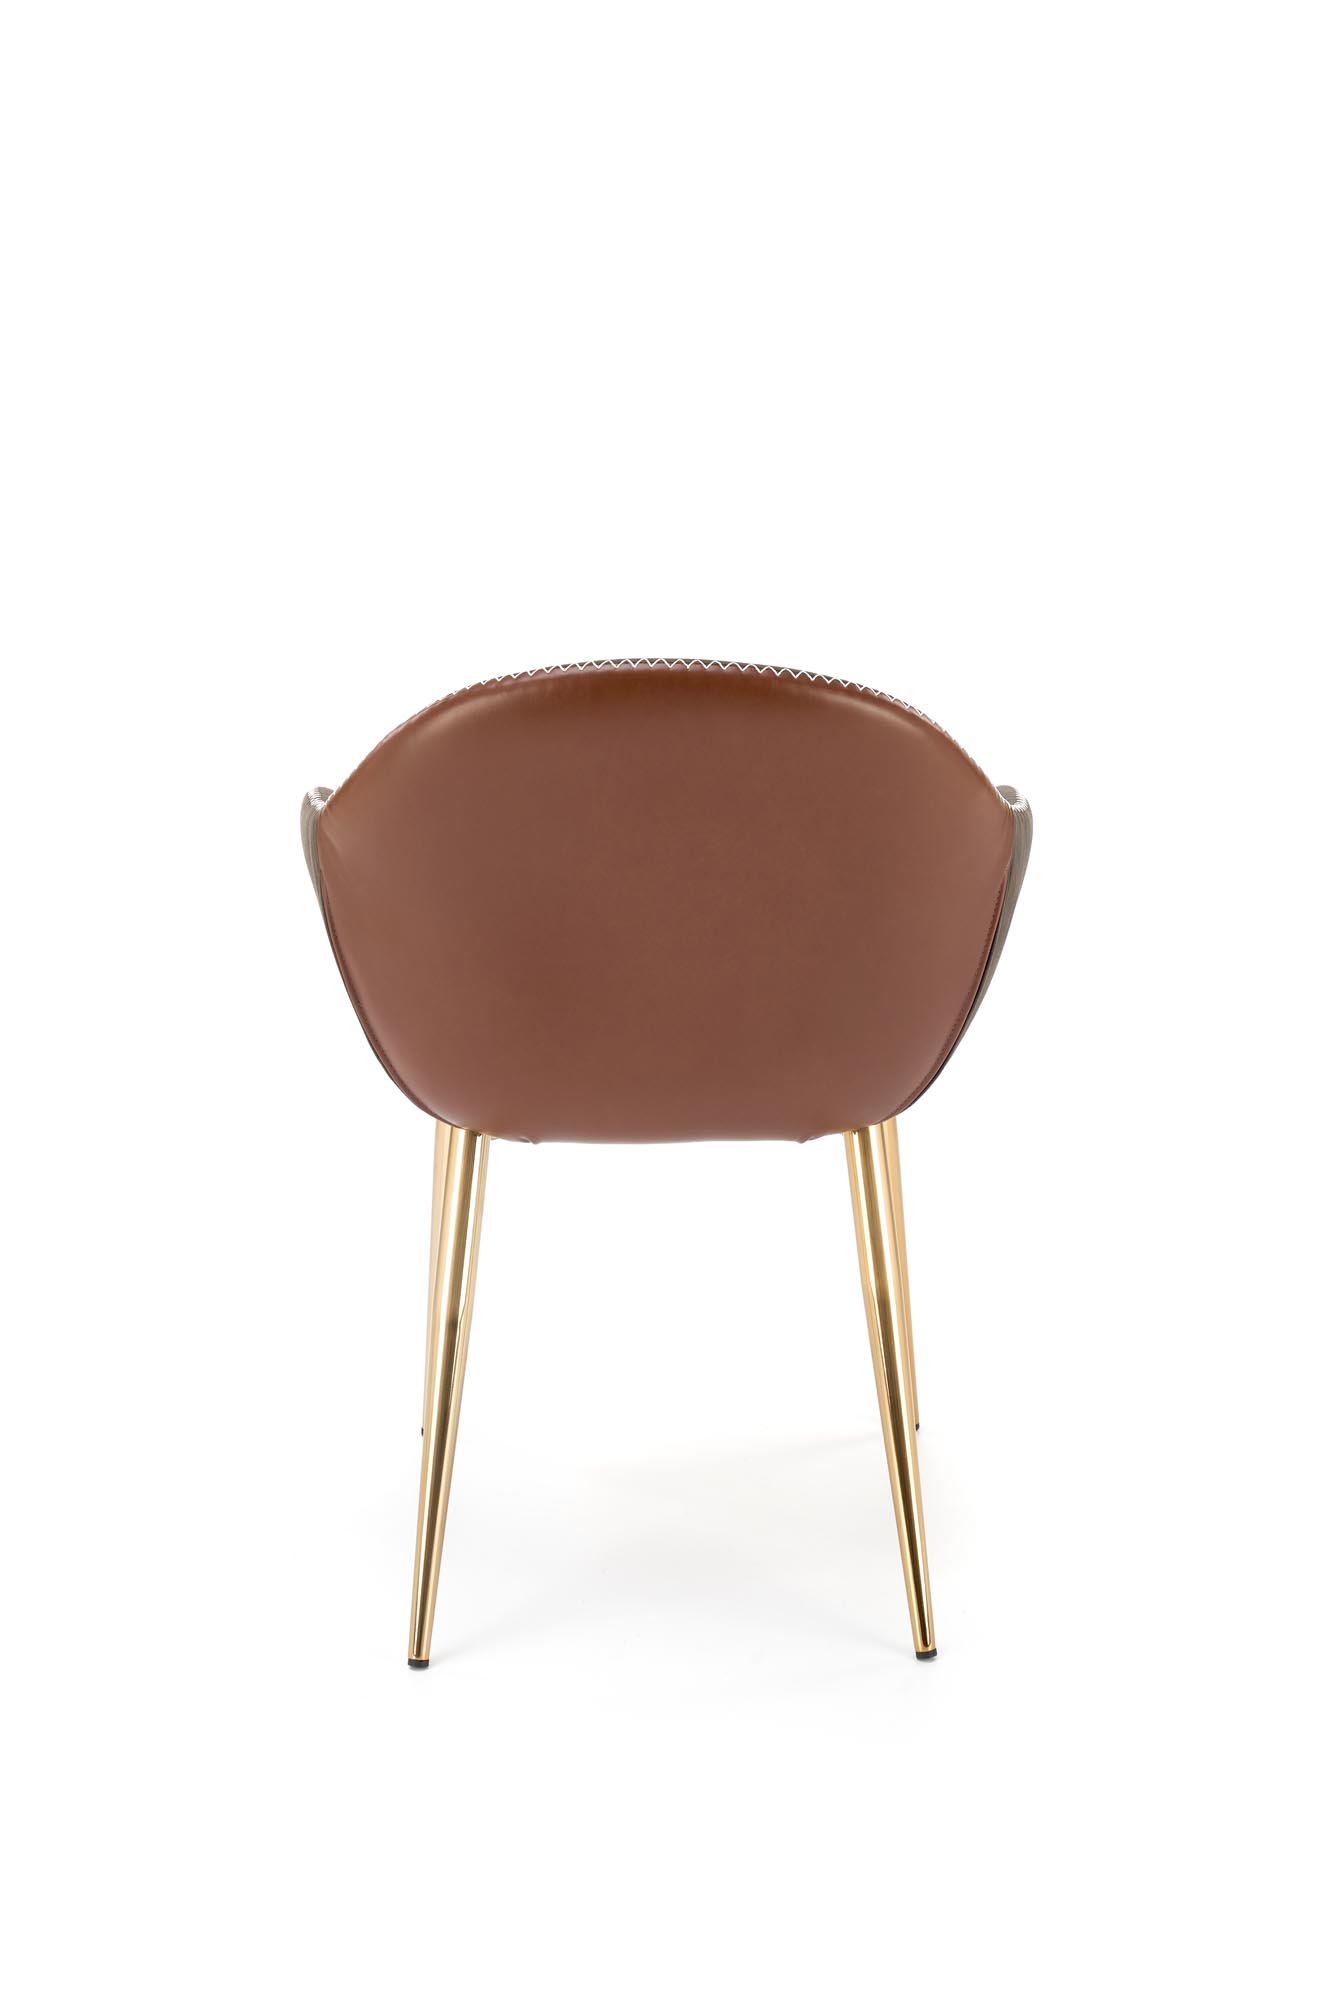 Židle K304 - tmavý popel / hnědá / zlatý chrom k304 židle tmavý popel / Hnědý / zlatý Chromovaný